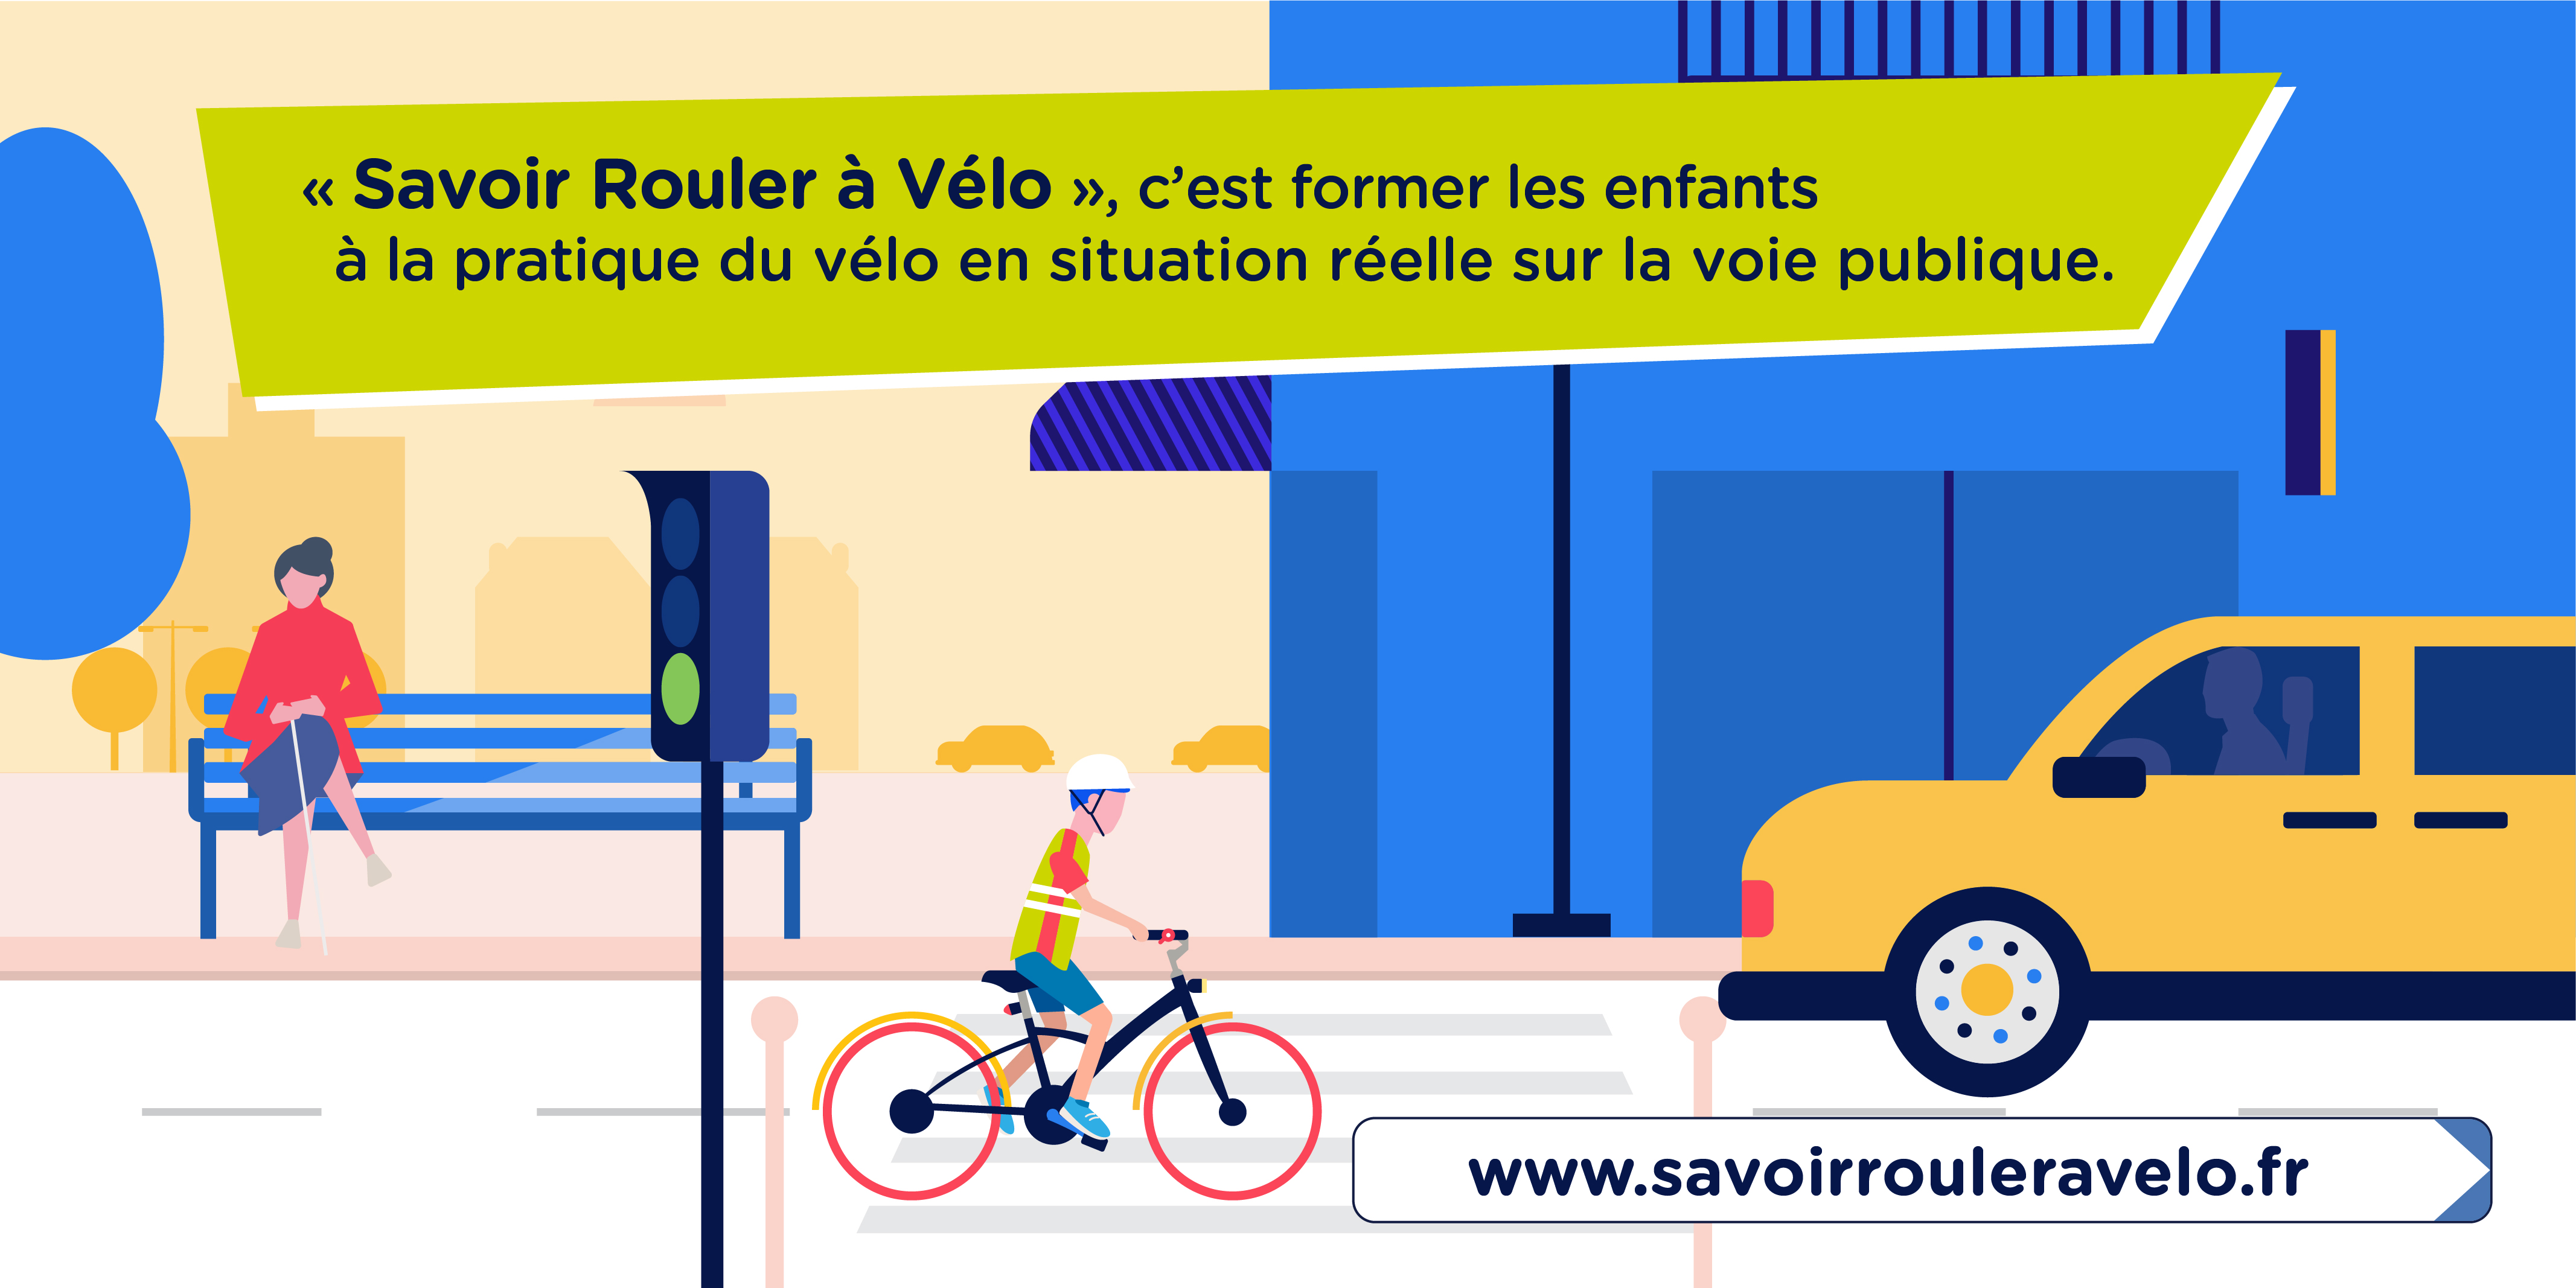 SAVOIR ROULER A VELO  Fédération française des usagers de la bicyclette